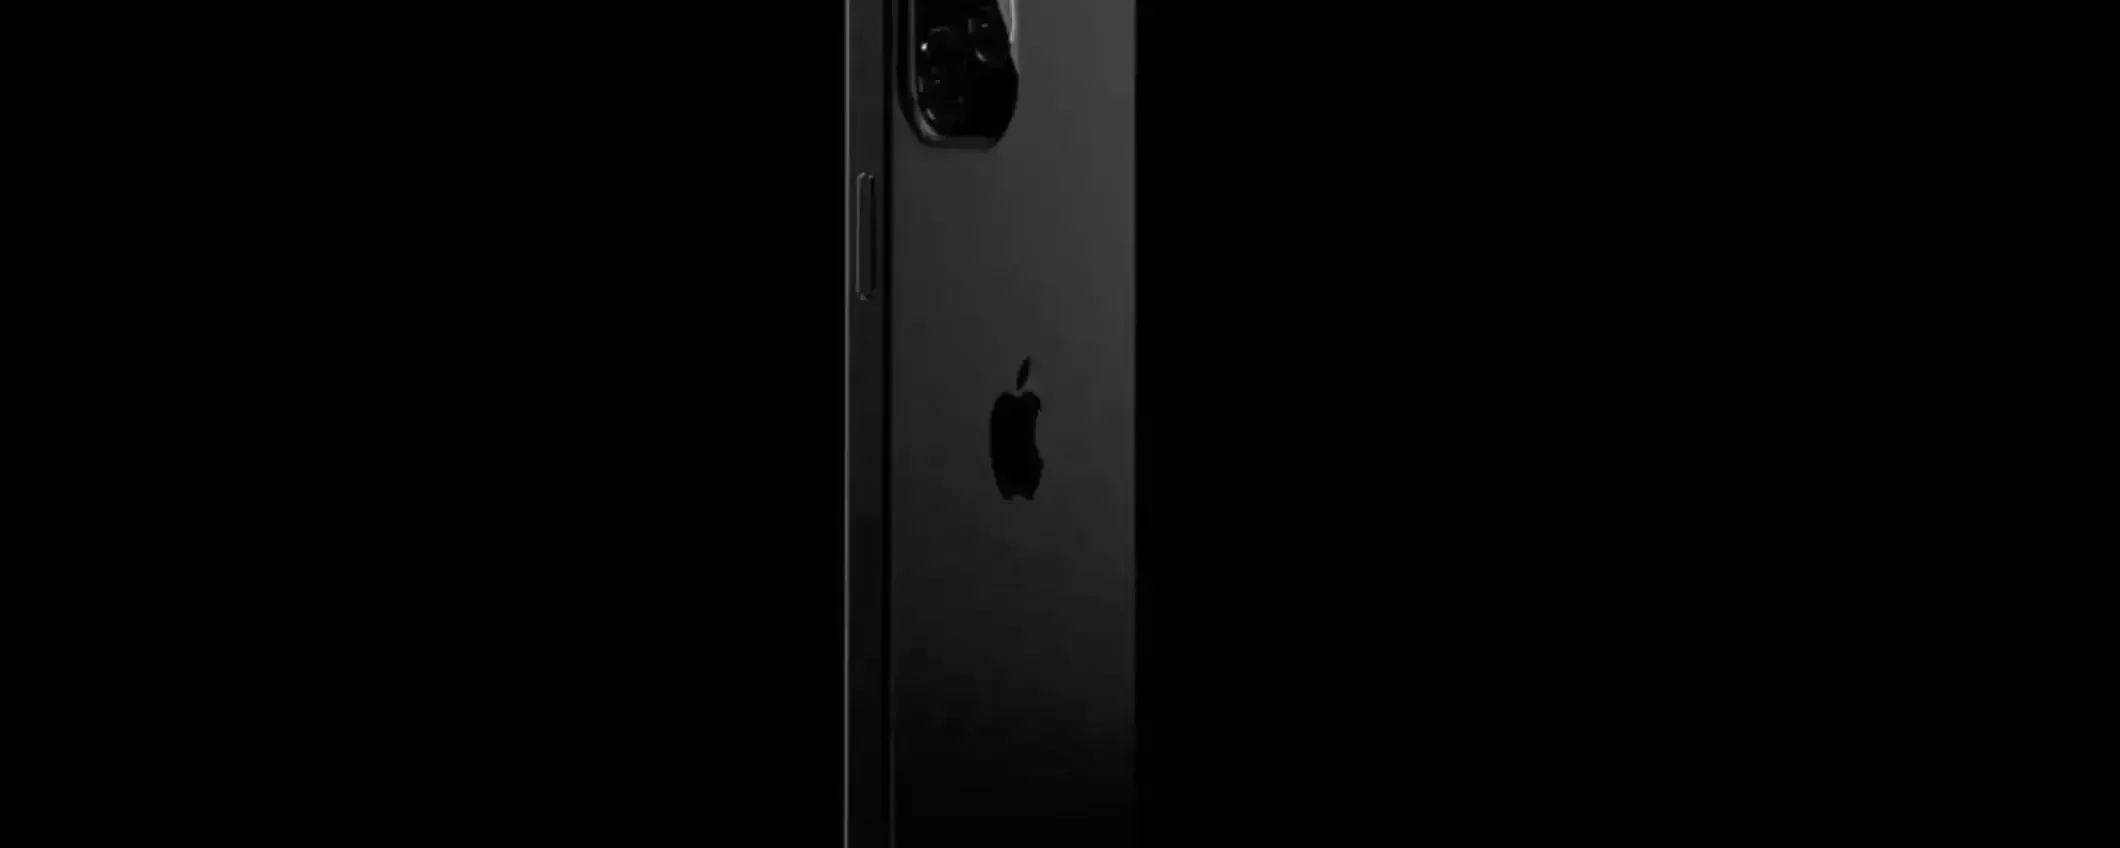 iPhone 16: tutta la line-up avrà il pulsante azione (RUMOR)